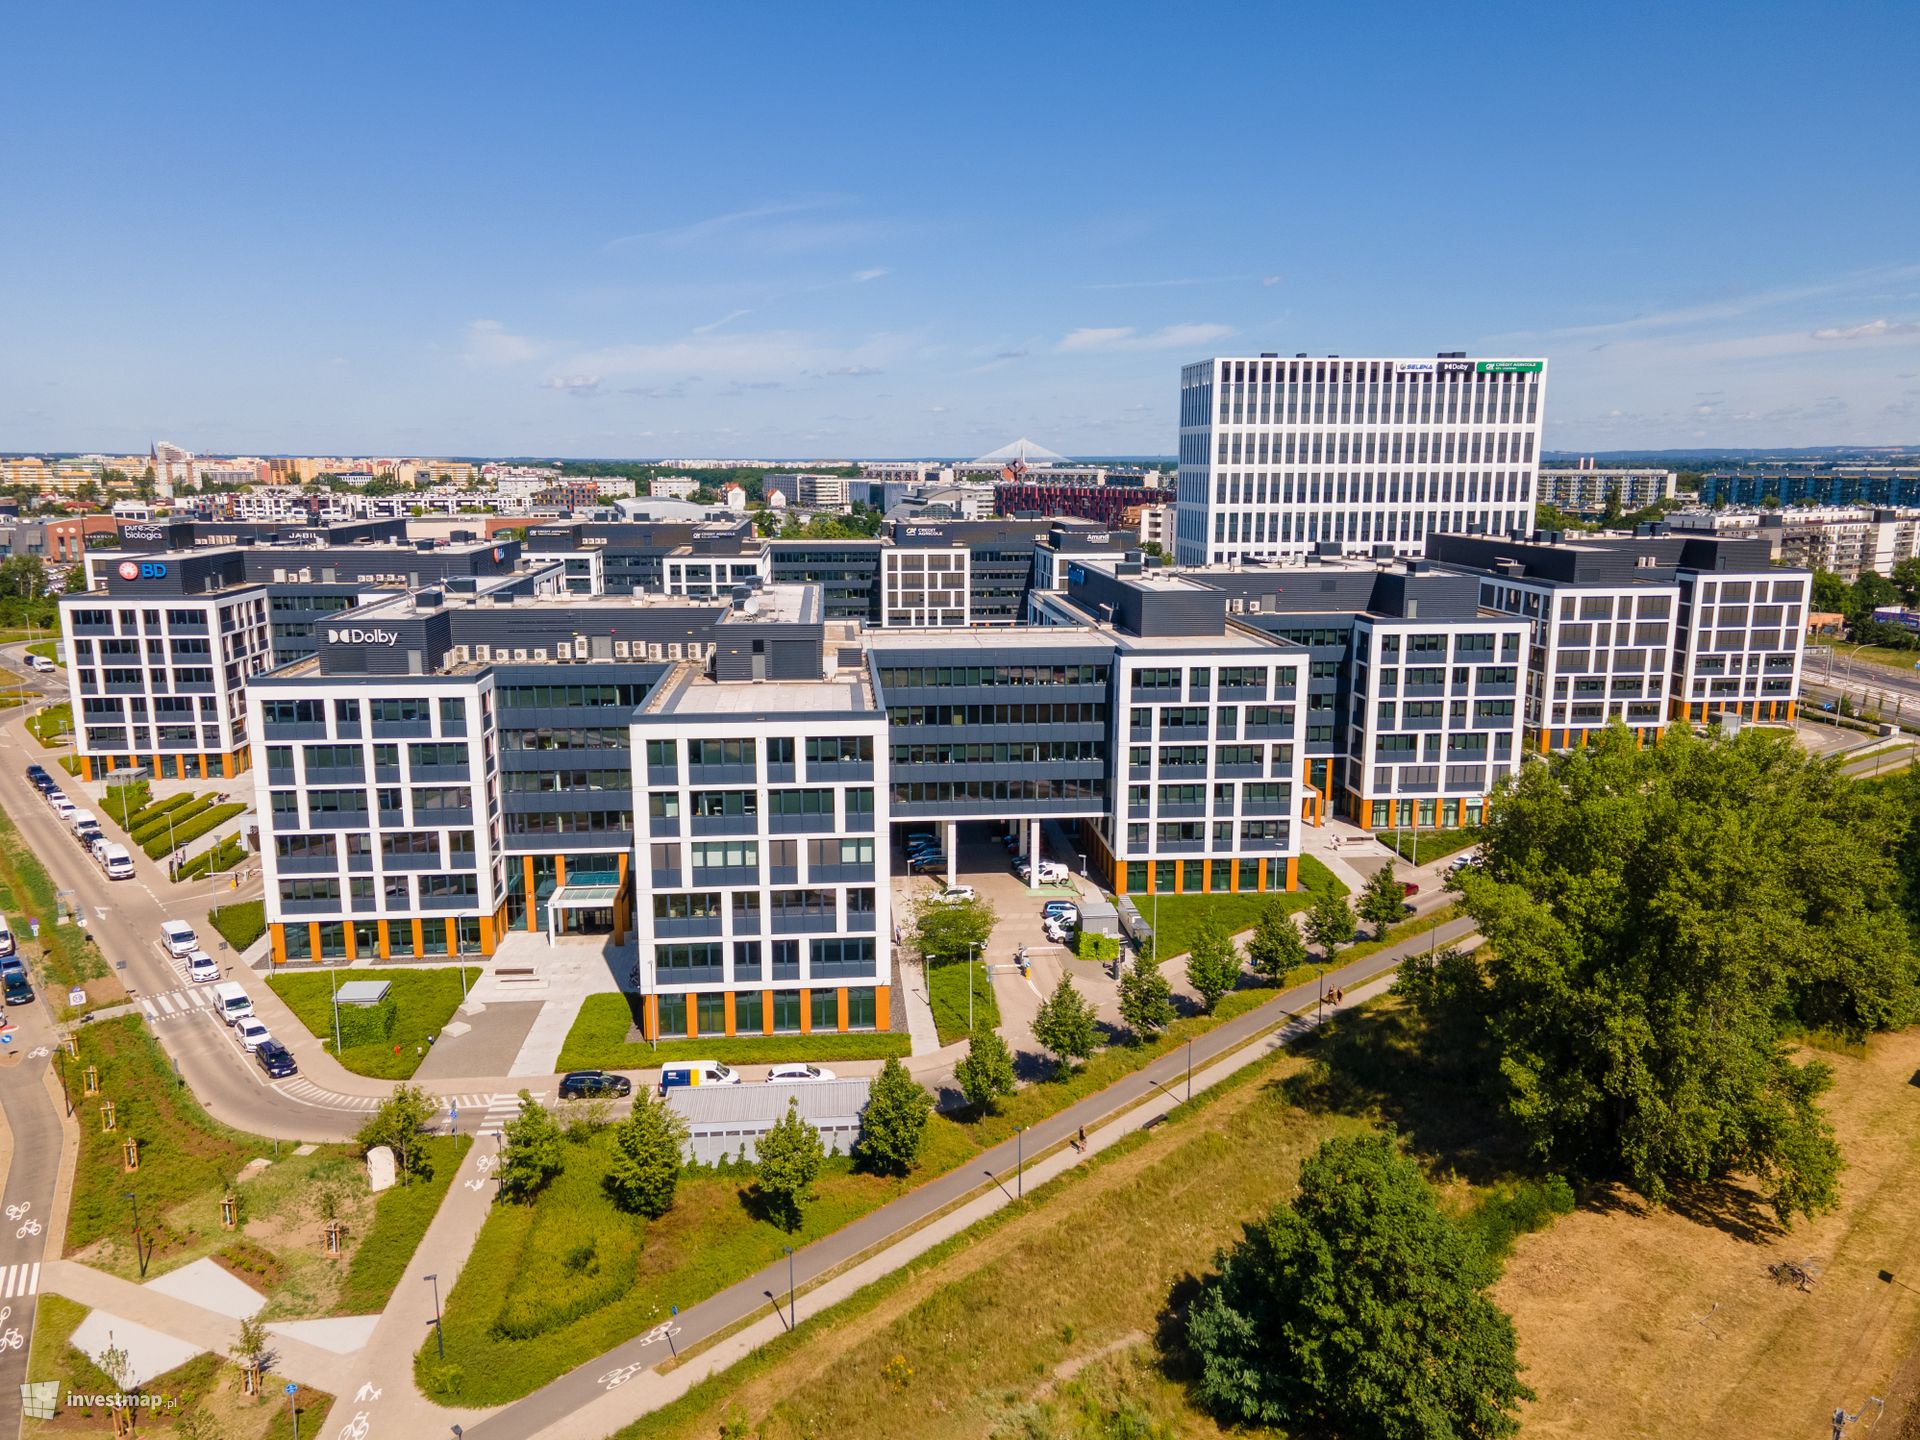 Najemcy wybierają elastyczne opcje najmu biur w kompleksie Business Garden Wrocław